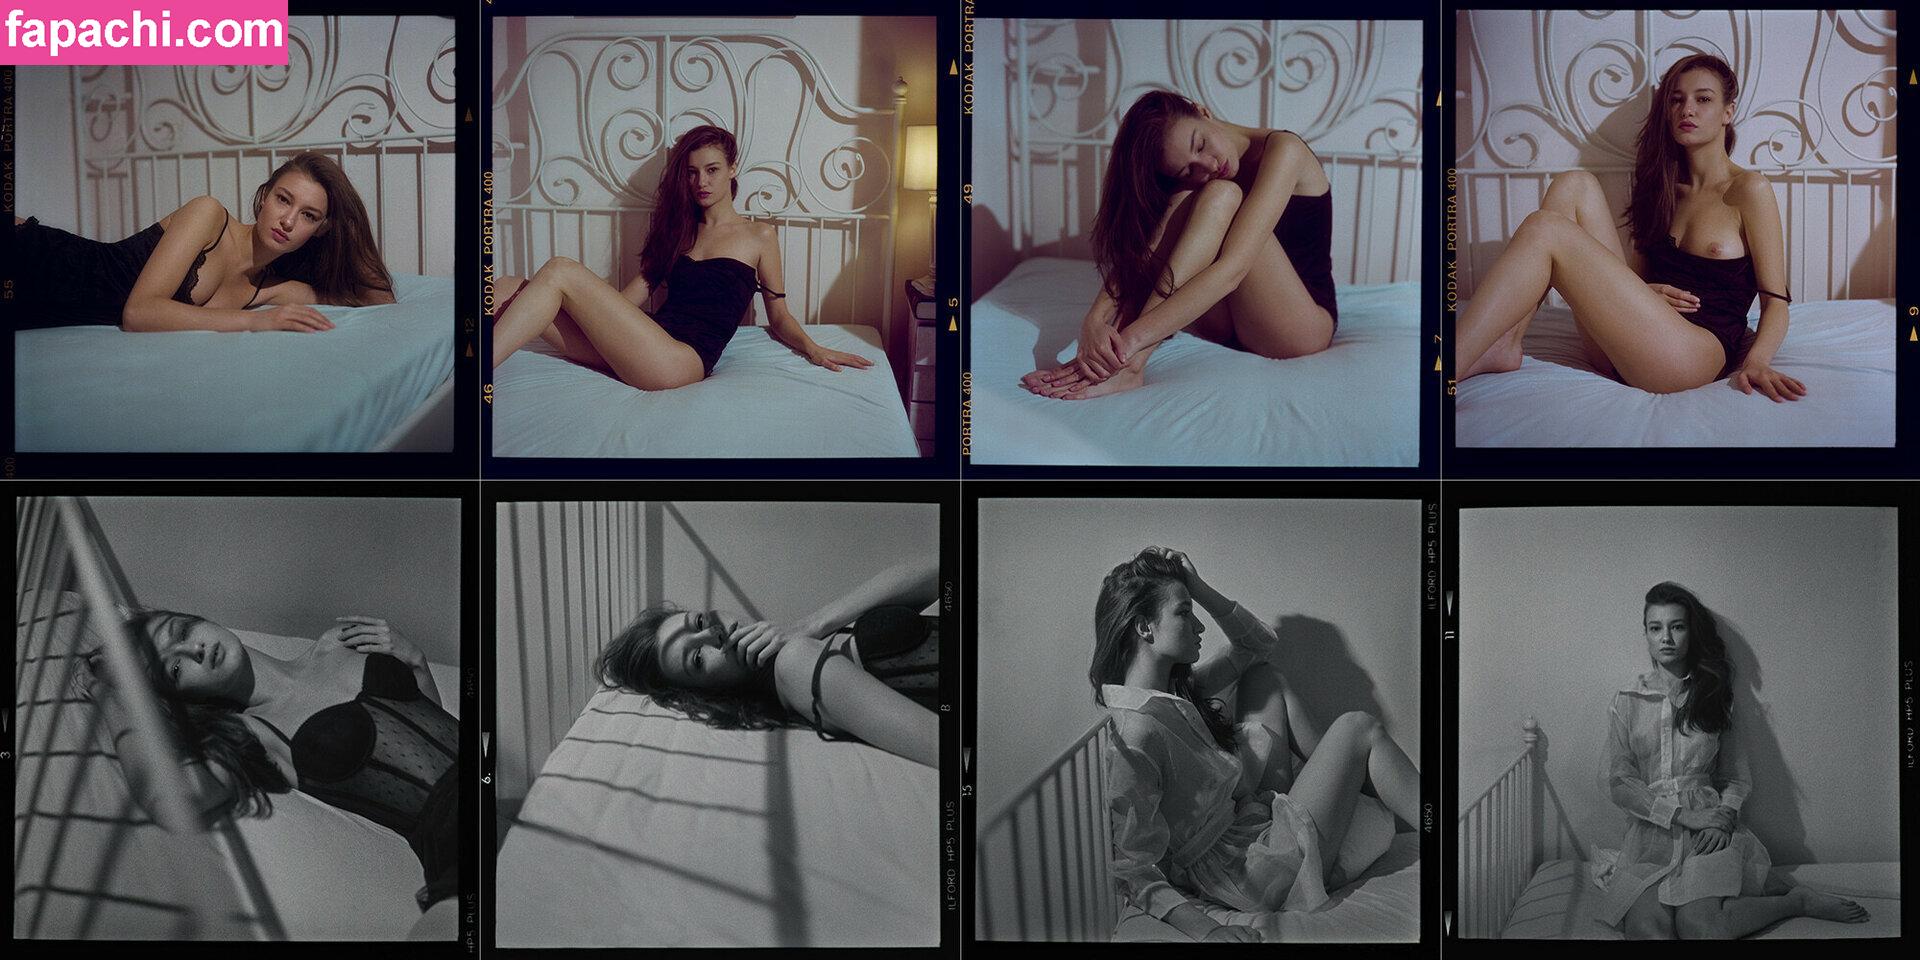 Boryana Manoiilova / boryanamanoilova leaked nude photo #0004 from OnlyFans/Patreon